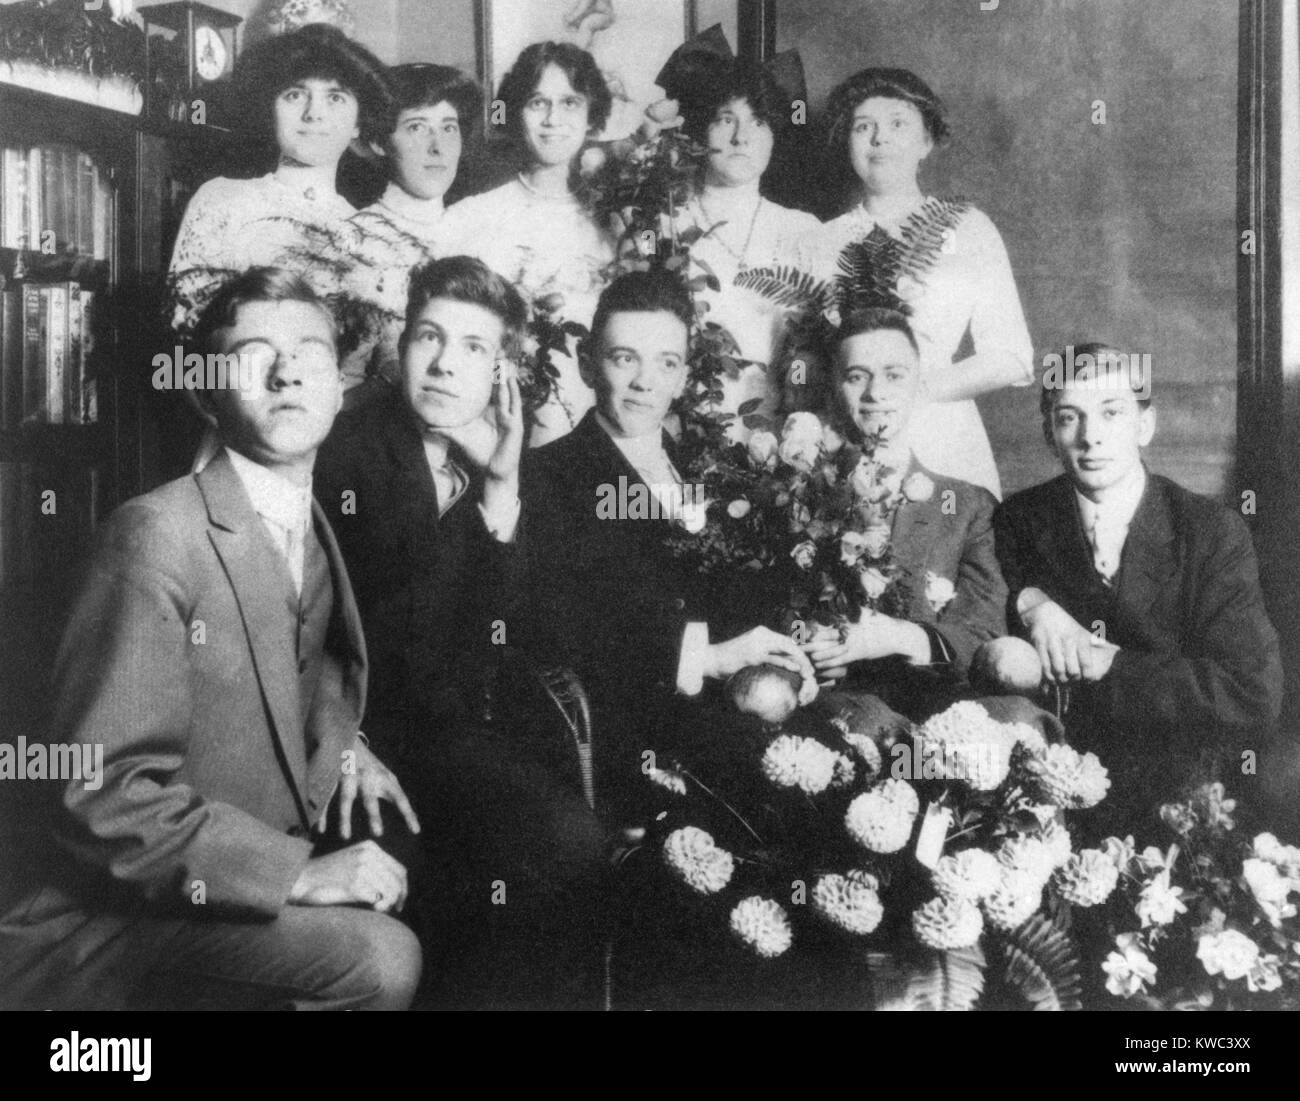 Young J. Edgar Hoover con un gruppo di adolescenti, ca. 1912. I fiori e la bella vestiti suggeriscono un importante occasione, forse di alta scuola graduazione da centrale ad alta, a Washington D.C. (BSLOC 2015 14 21) Foto Stock